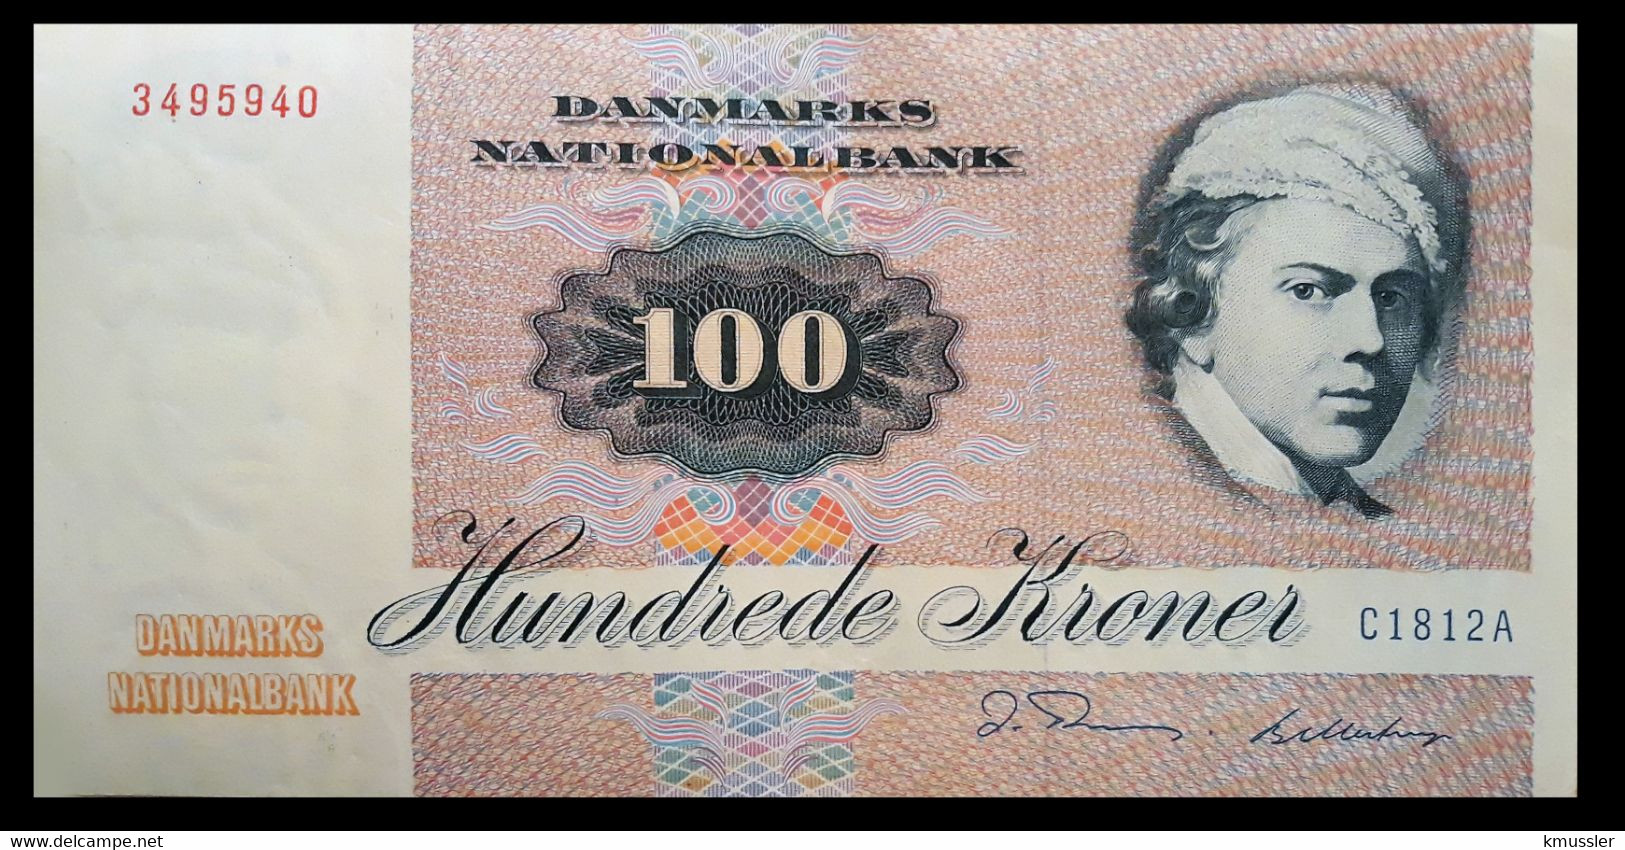 # # # Banknote Dänemark (Denmark) 100 Kroner 1981 # # # - Dinamarca